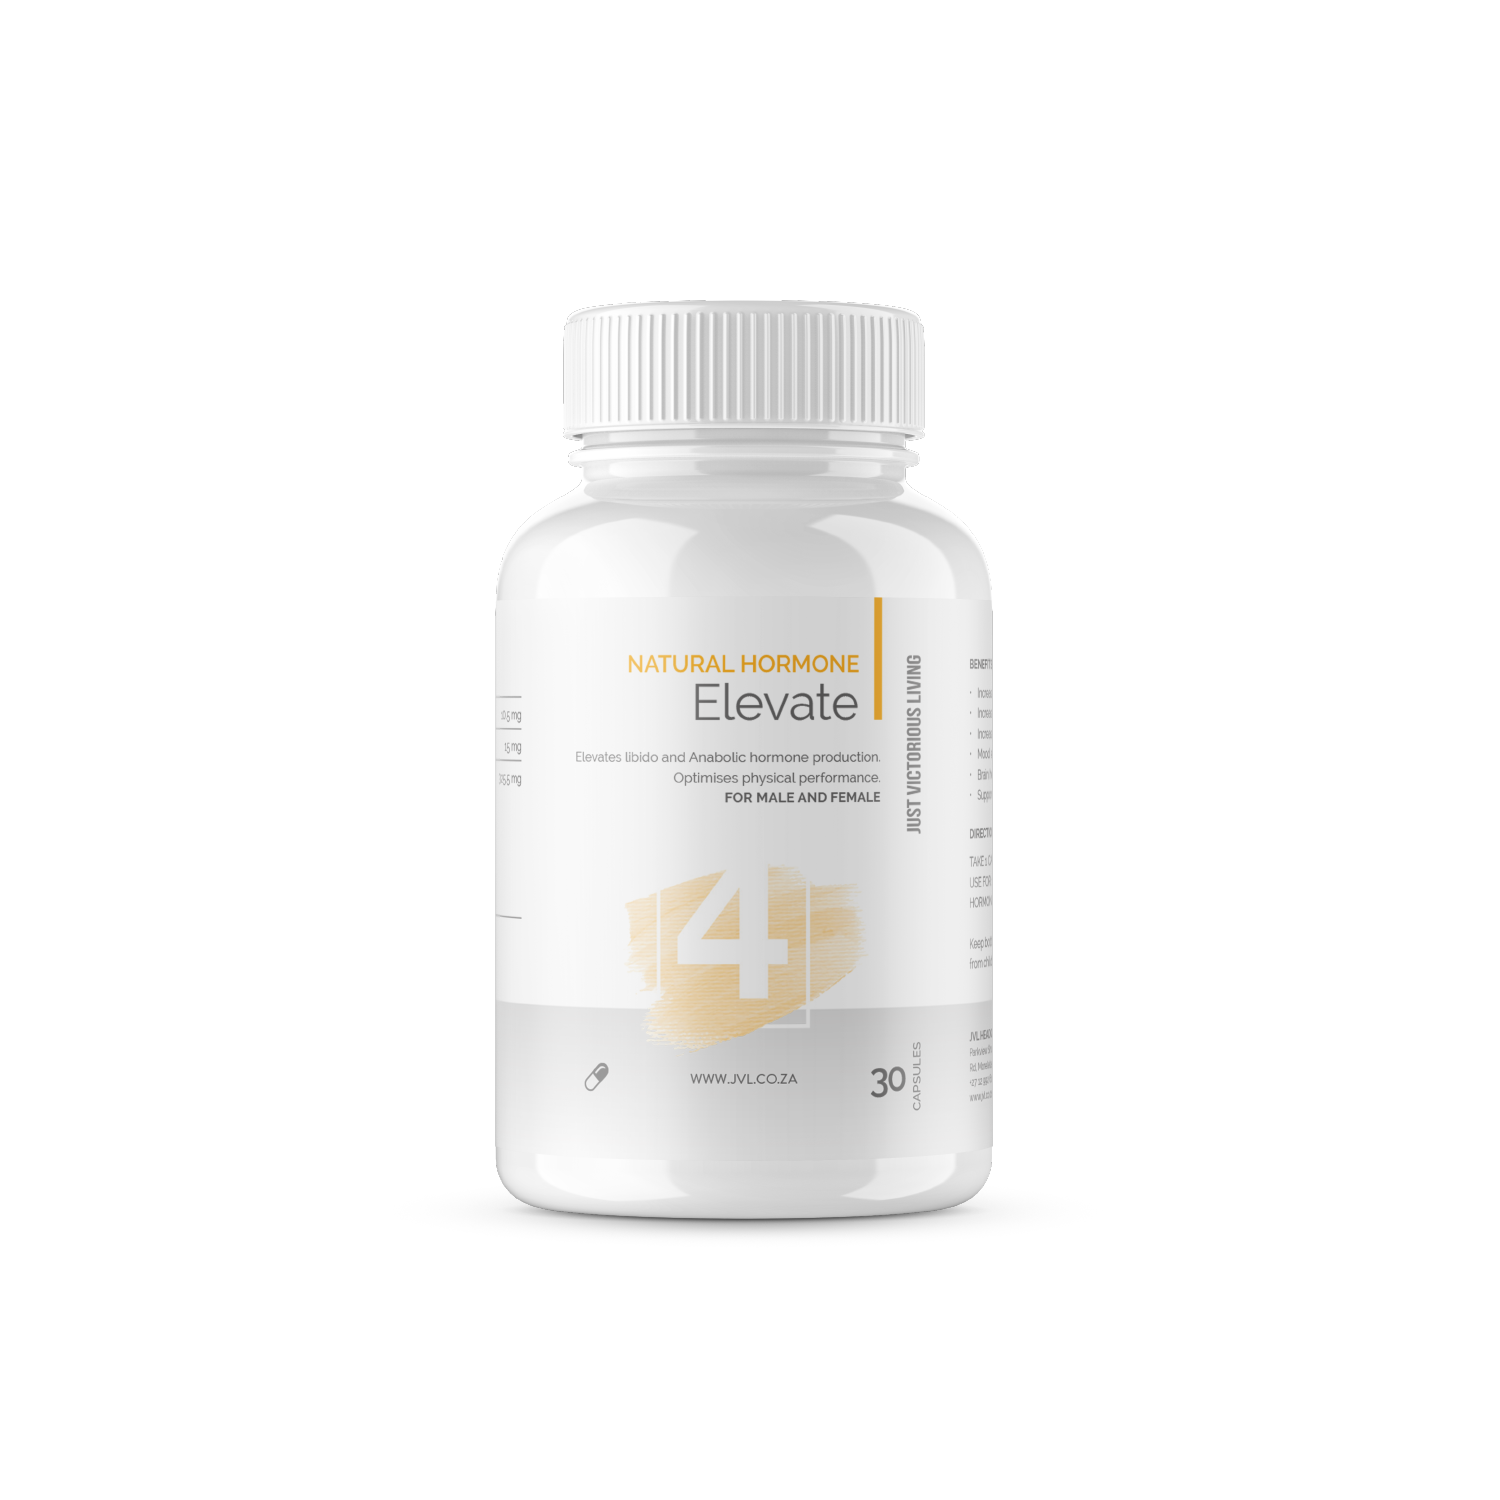 Elevate Natural Hormone - JVL 